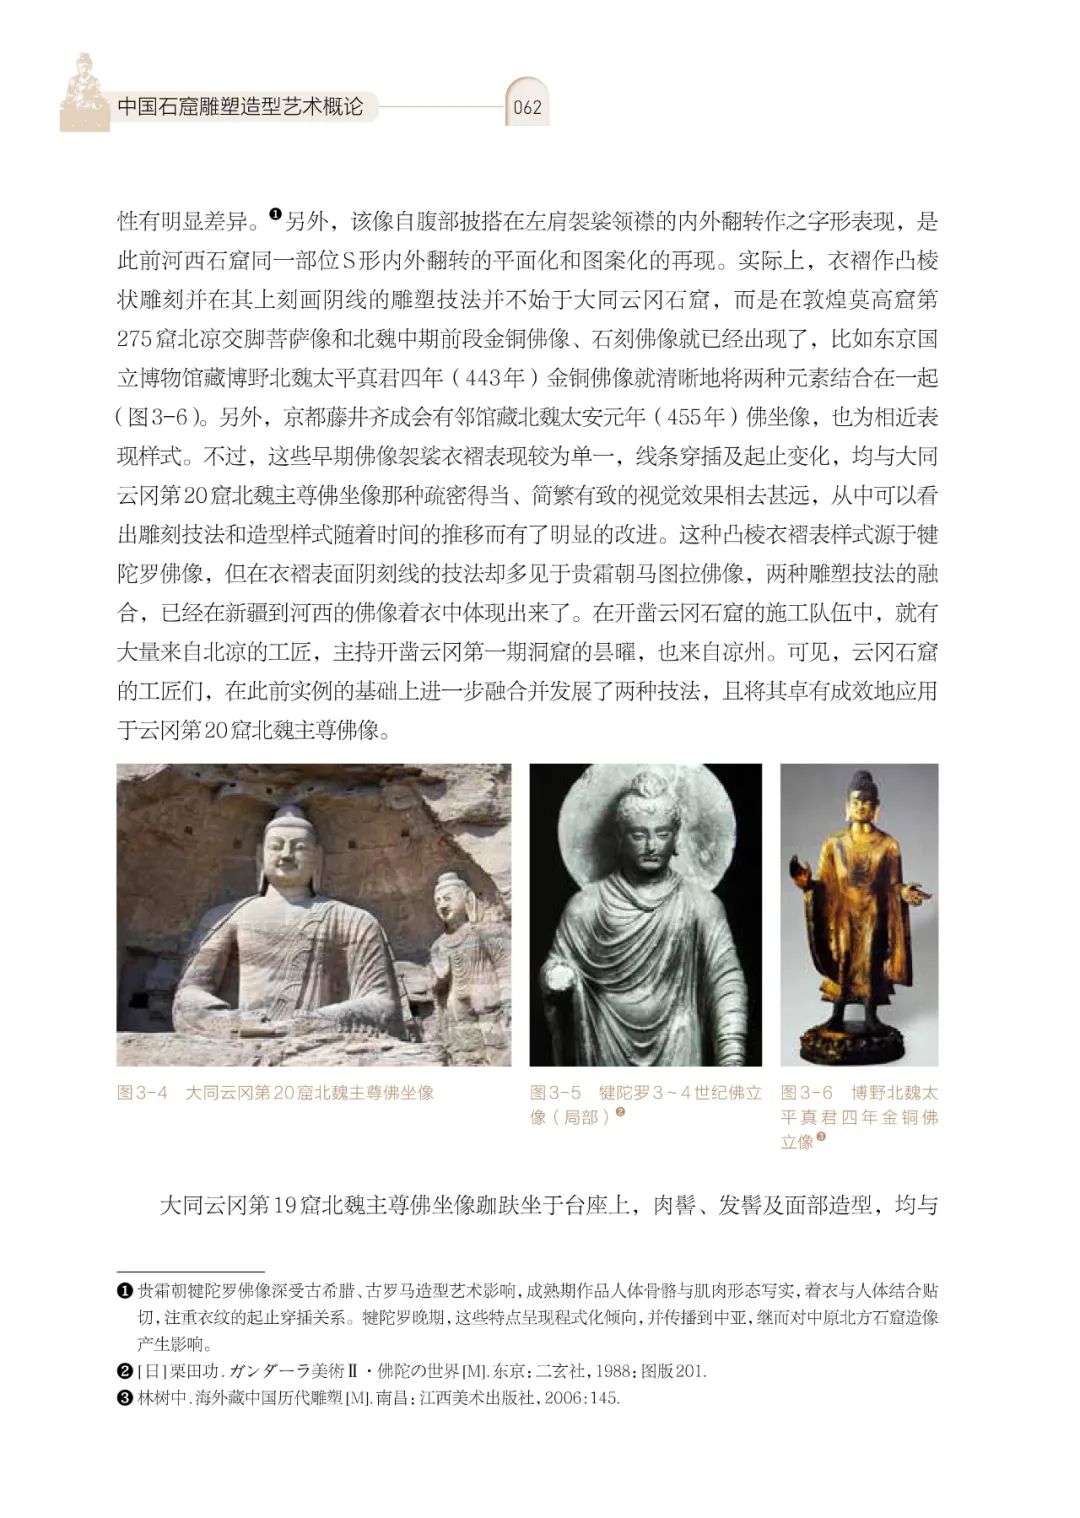 黄文智编著，《中国石窟雕塑造型艺术概论》出版